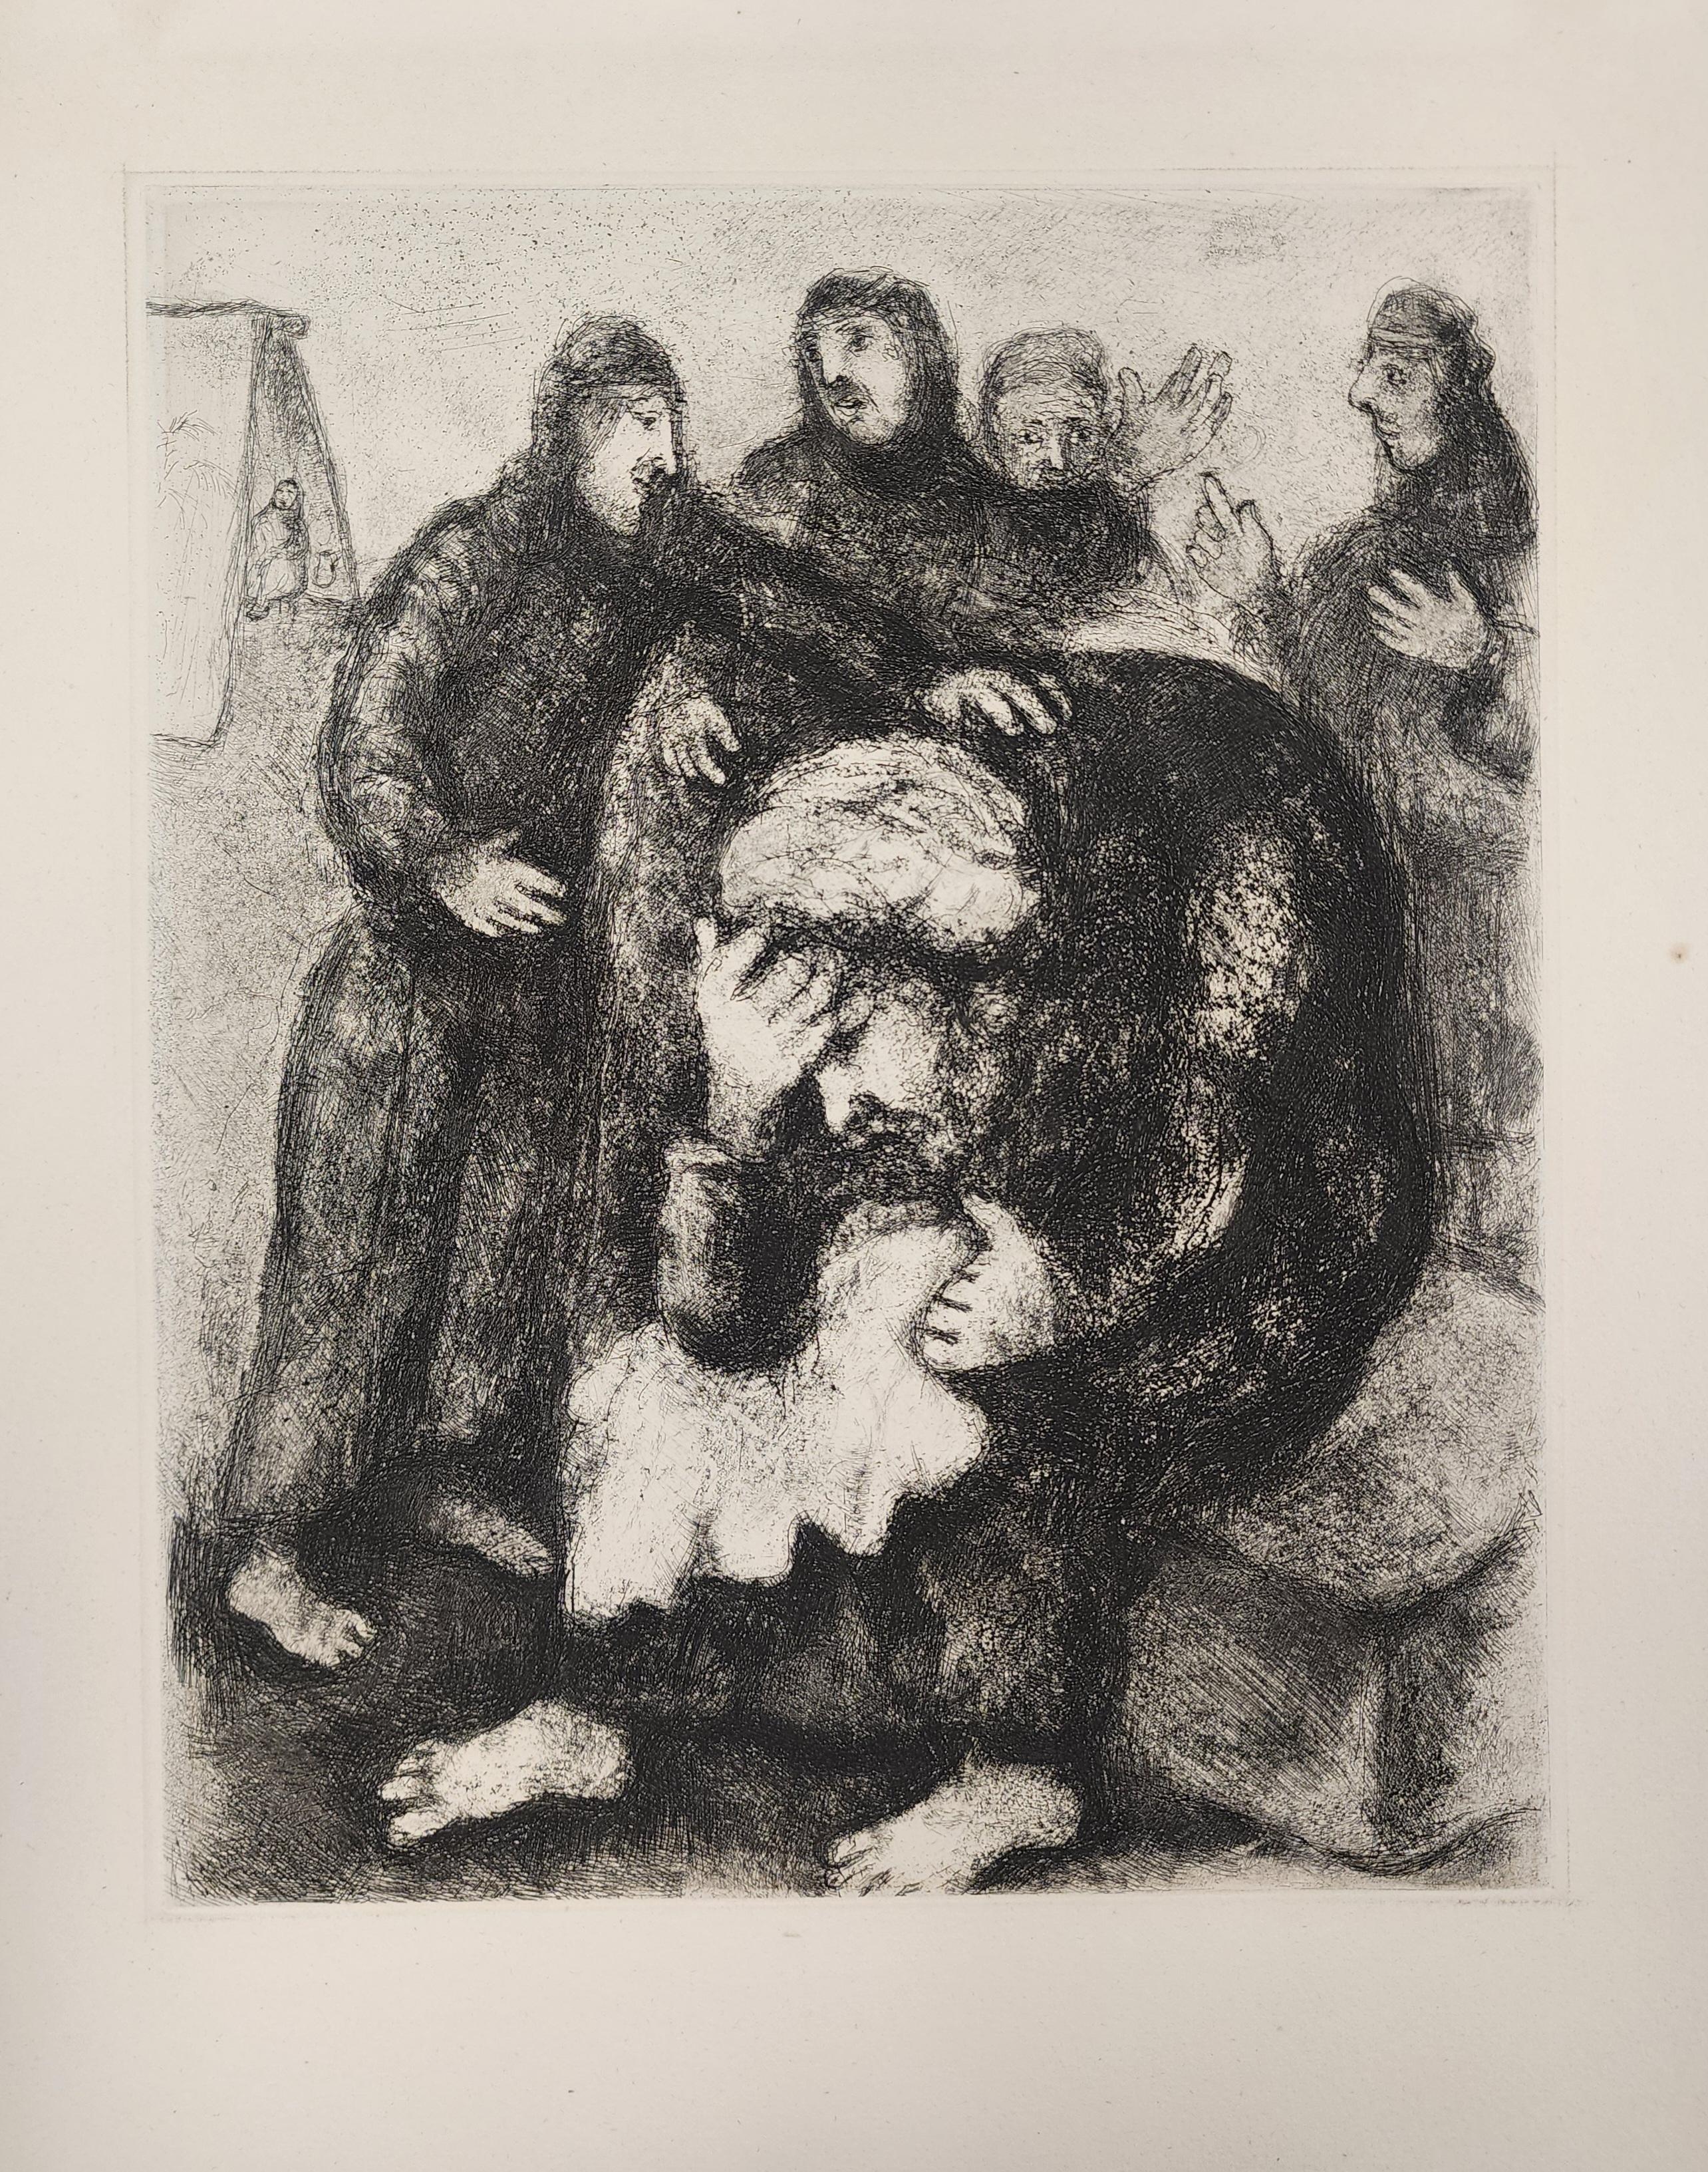 Description
Artistics : Marc Chagall
Titre : Jacob pleure Joseph
Année : 1956
Dimensions : 16.12" W : 12.37"
Médium : Gravure, Non signé
Condit : Excellent

Après que Chagall a terminé ses gravures pour Les Fables (1930), Vollard lui propose à